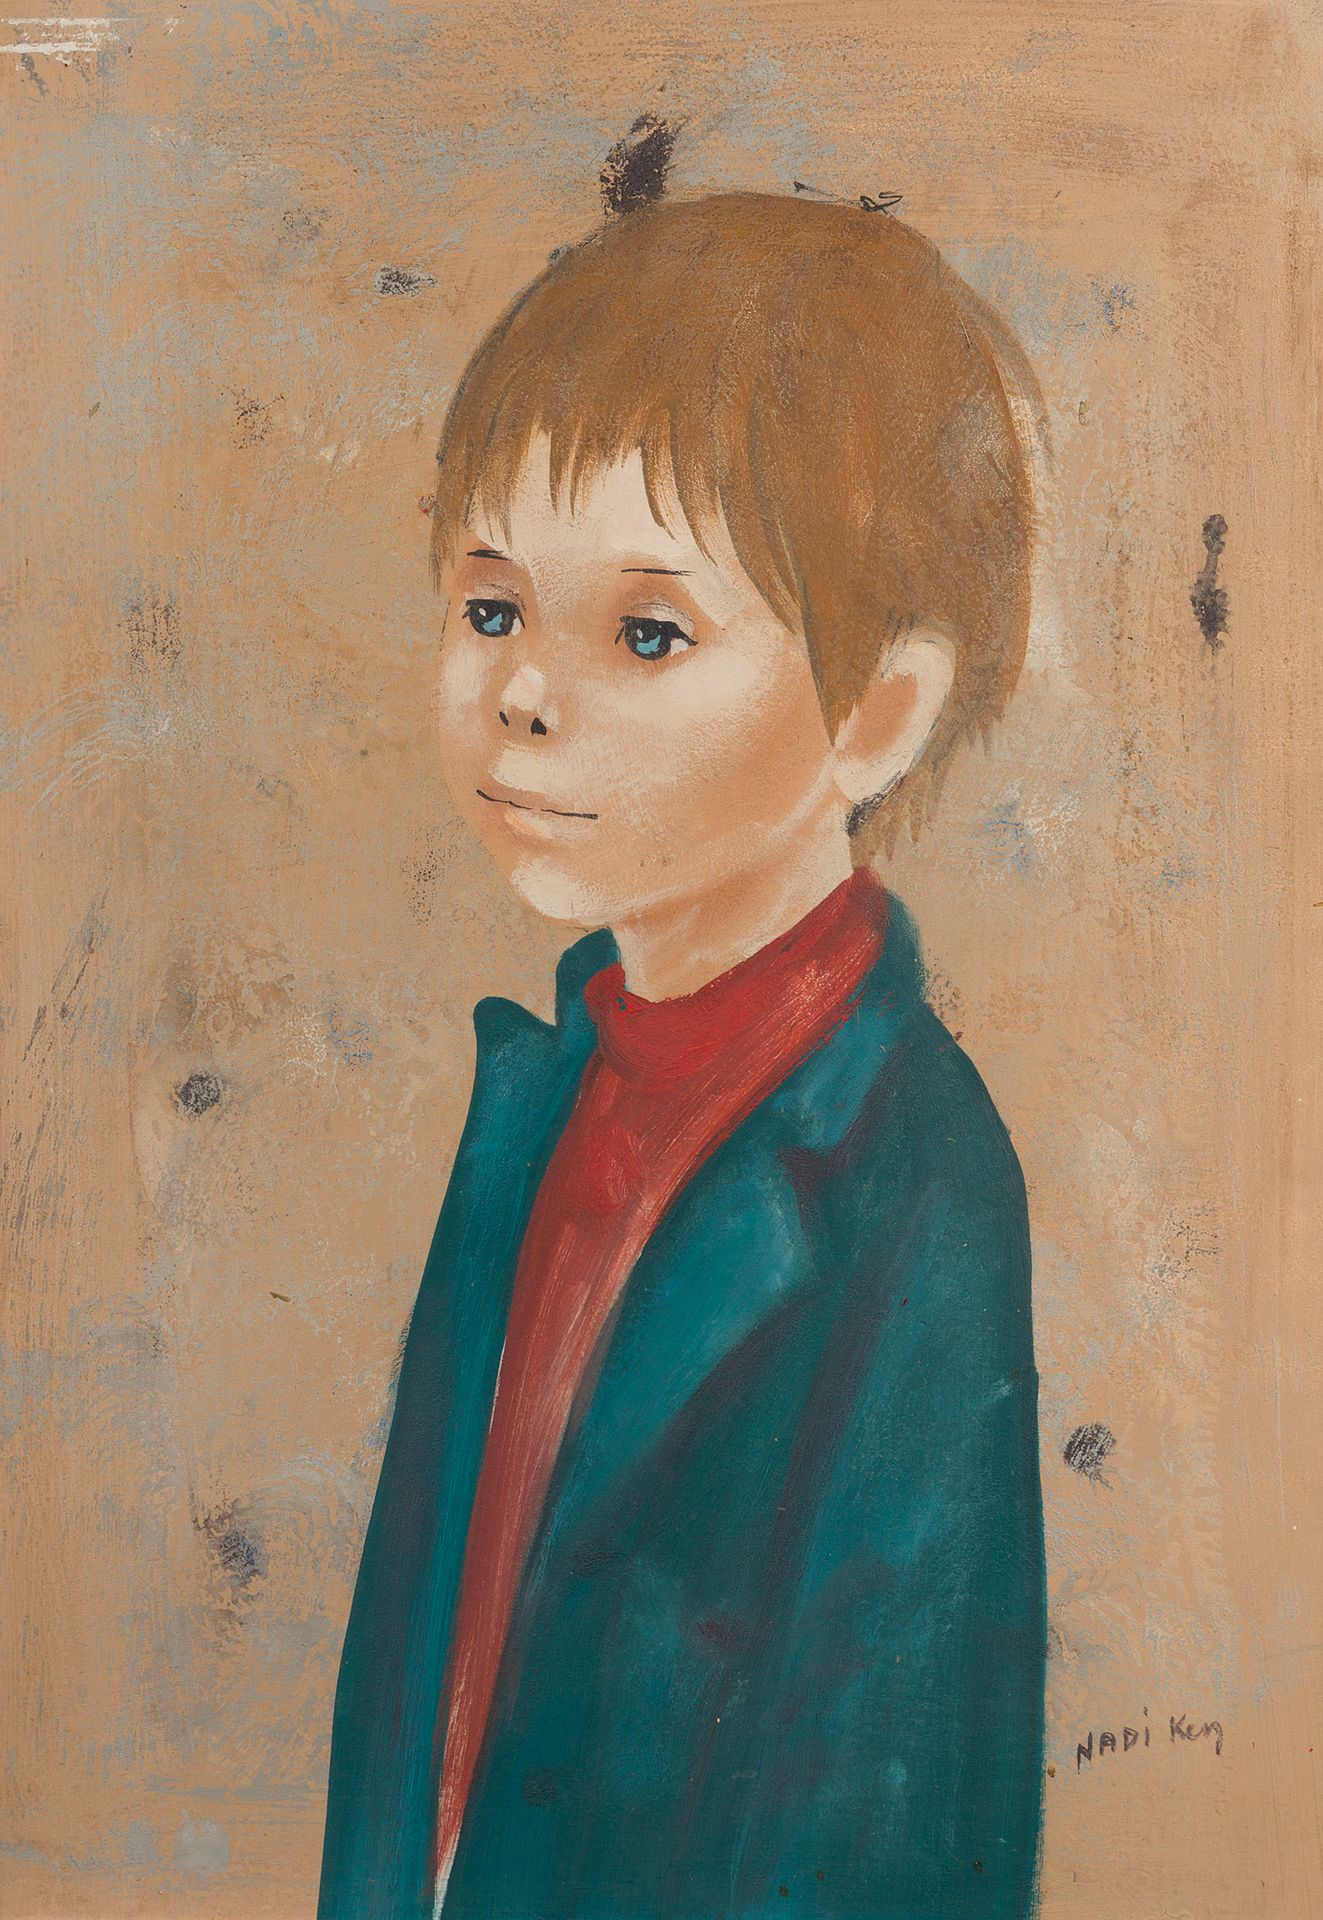 Null Nadi KEN (geboren 1934)

Porträt eines Kindes

Öl auf Tafel, signiert

52,5&hellip;